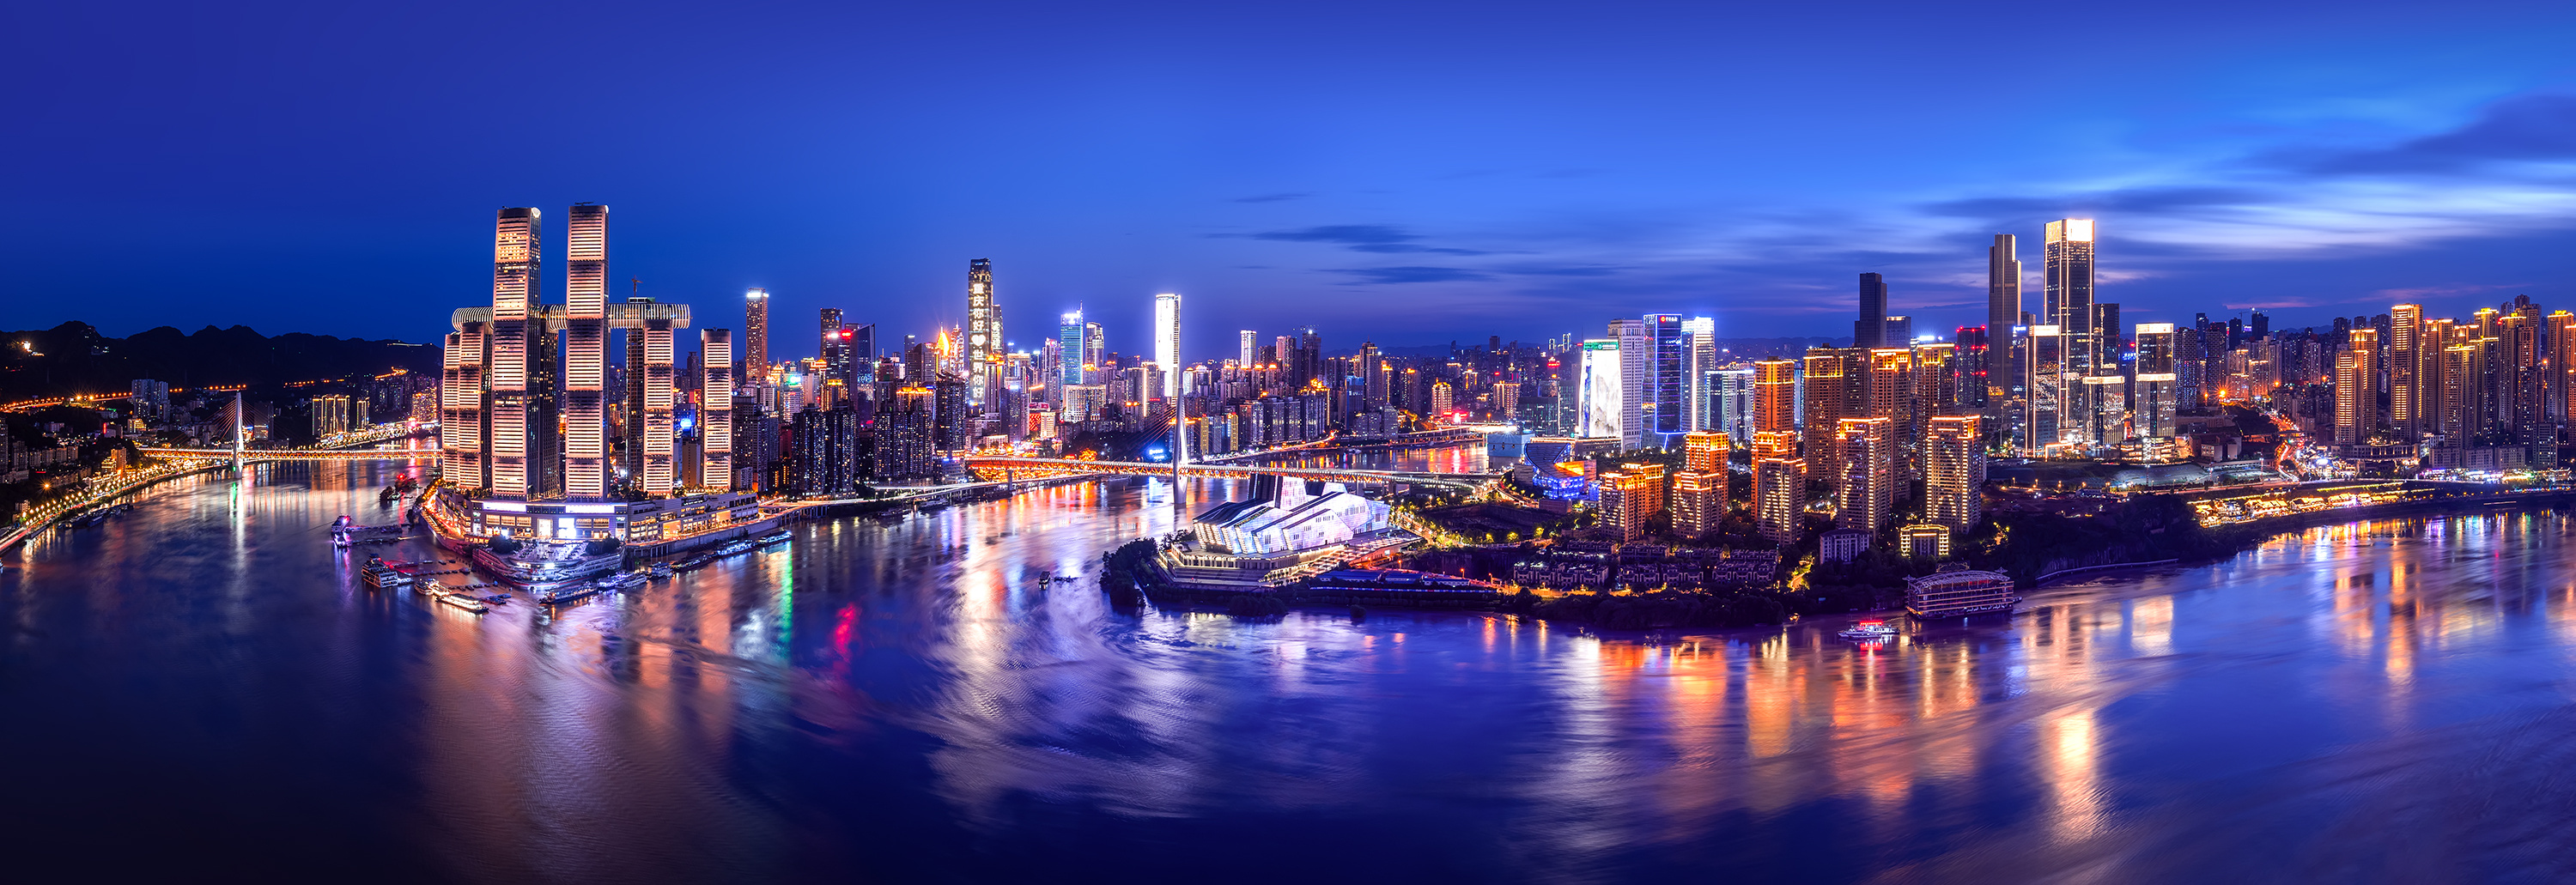 重庆两江汇合观景点图片